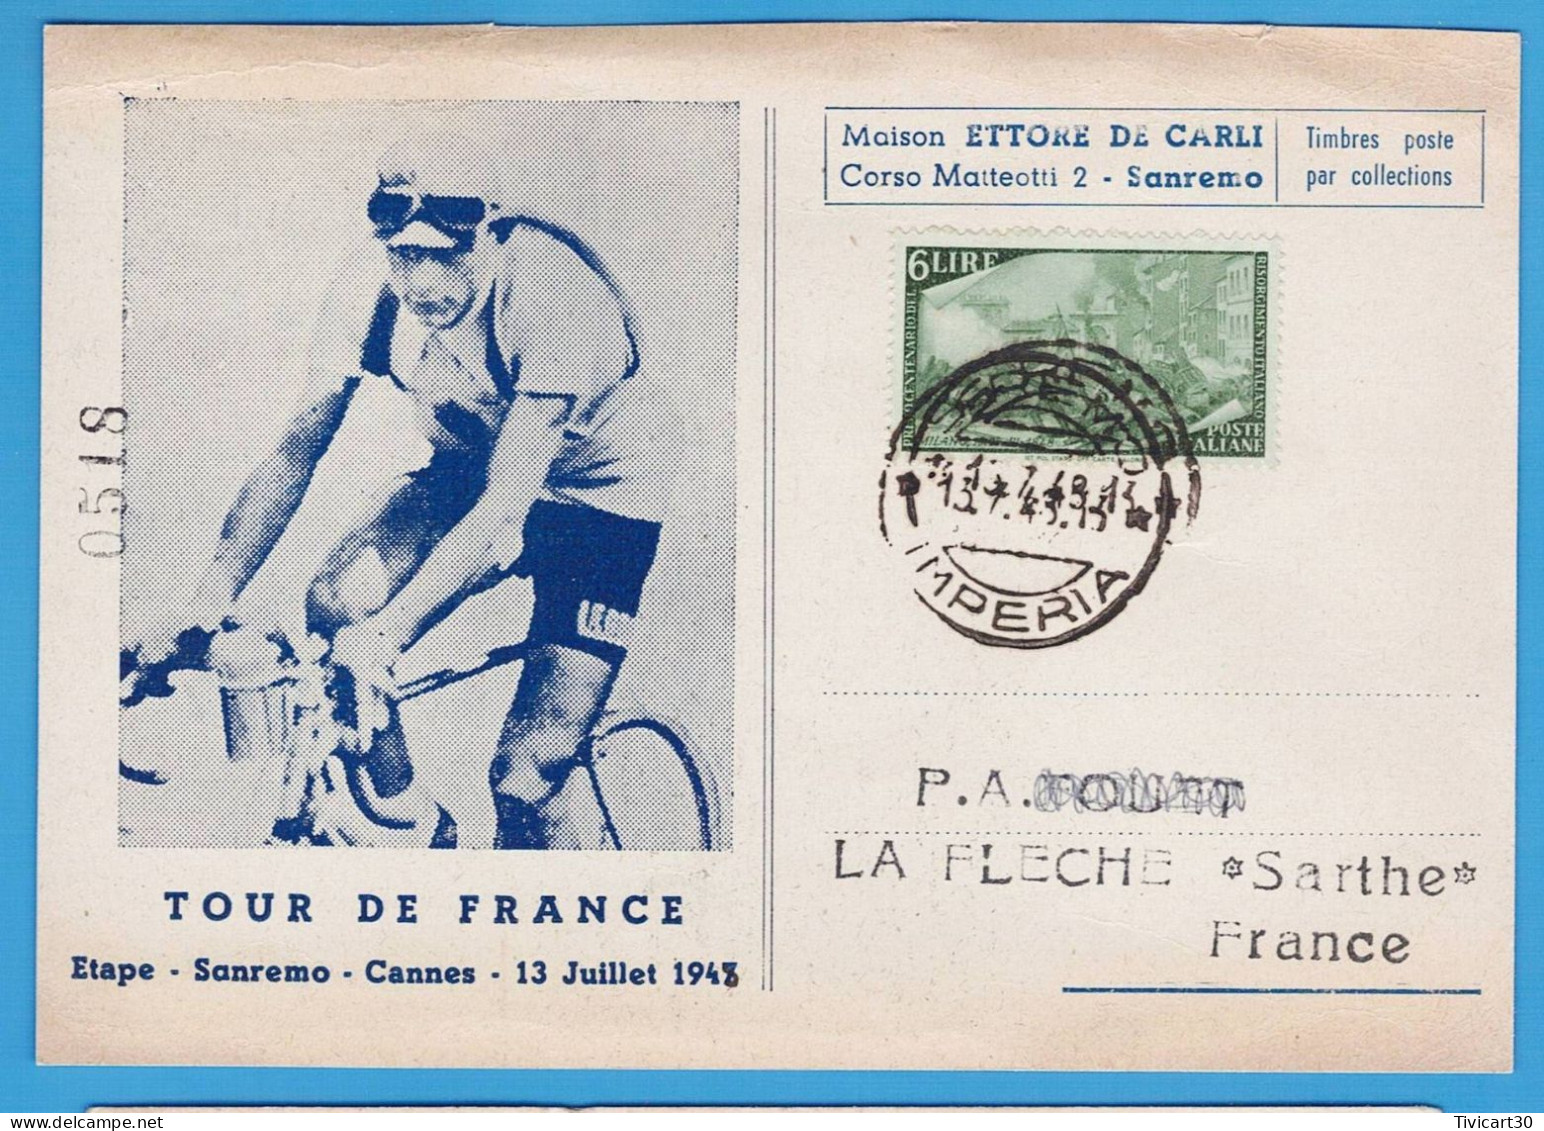 CP CYCLISME - TOUR DE FRANCE 1948 - ETAPE SANREMO (ITALIE) CANNES DU 13 JUILLET 1948 - MAISON ETTORE DE CARLI - Radsport